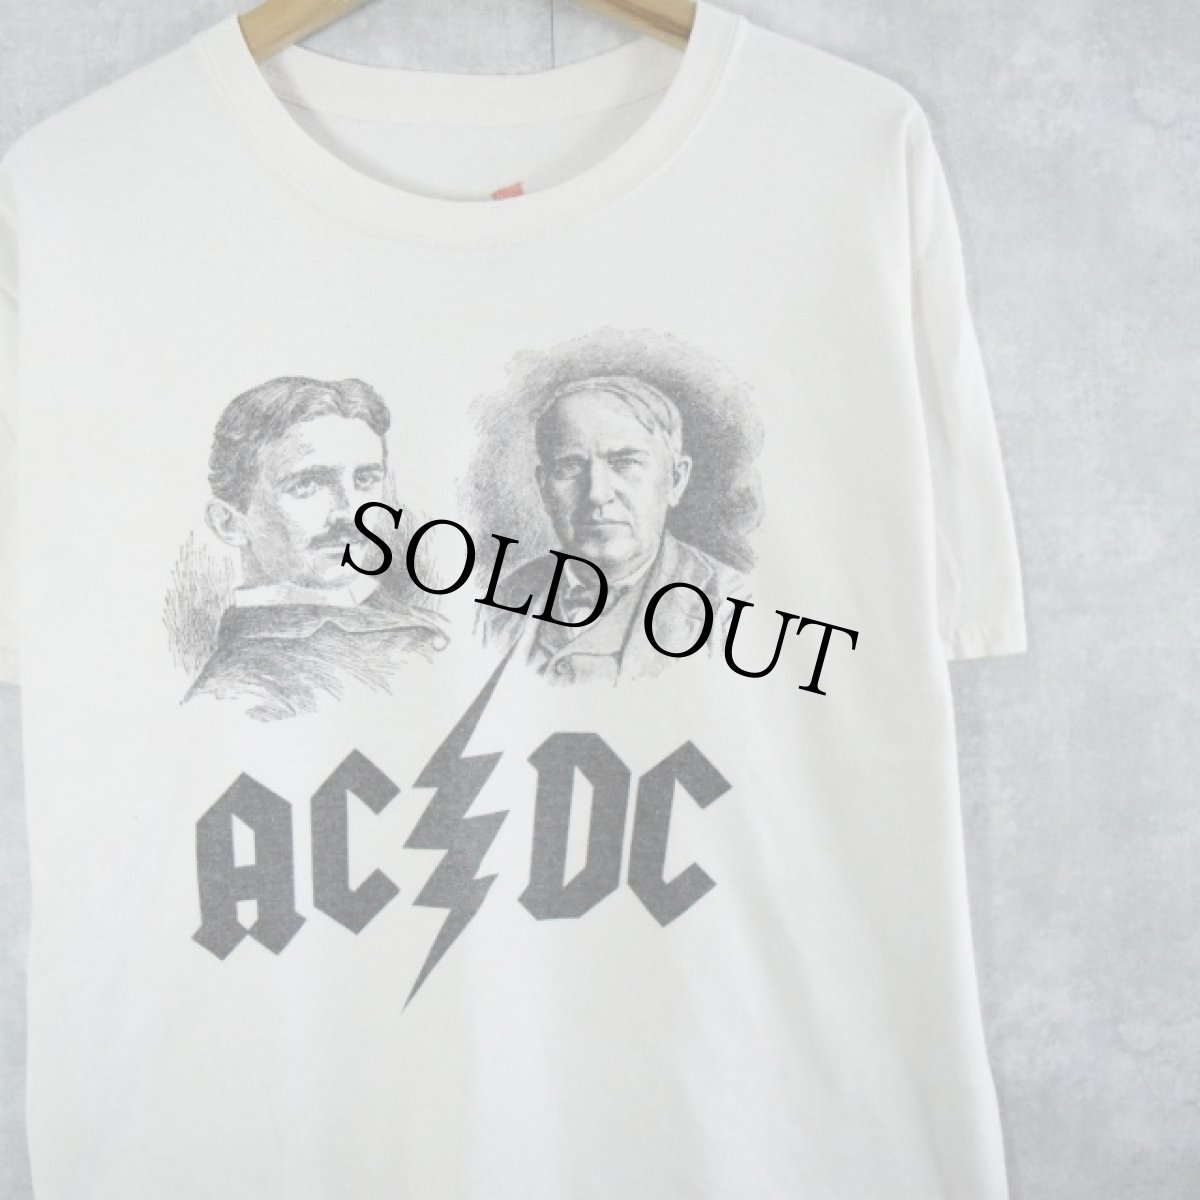 画像1: "AC/DC" テスラ×エジソン ロックバンドパロディTシャツ L (1)